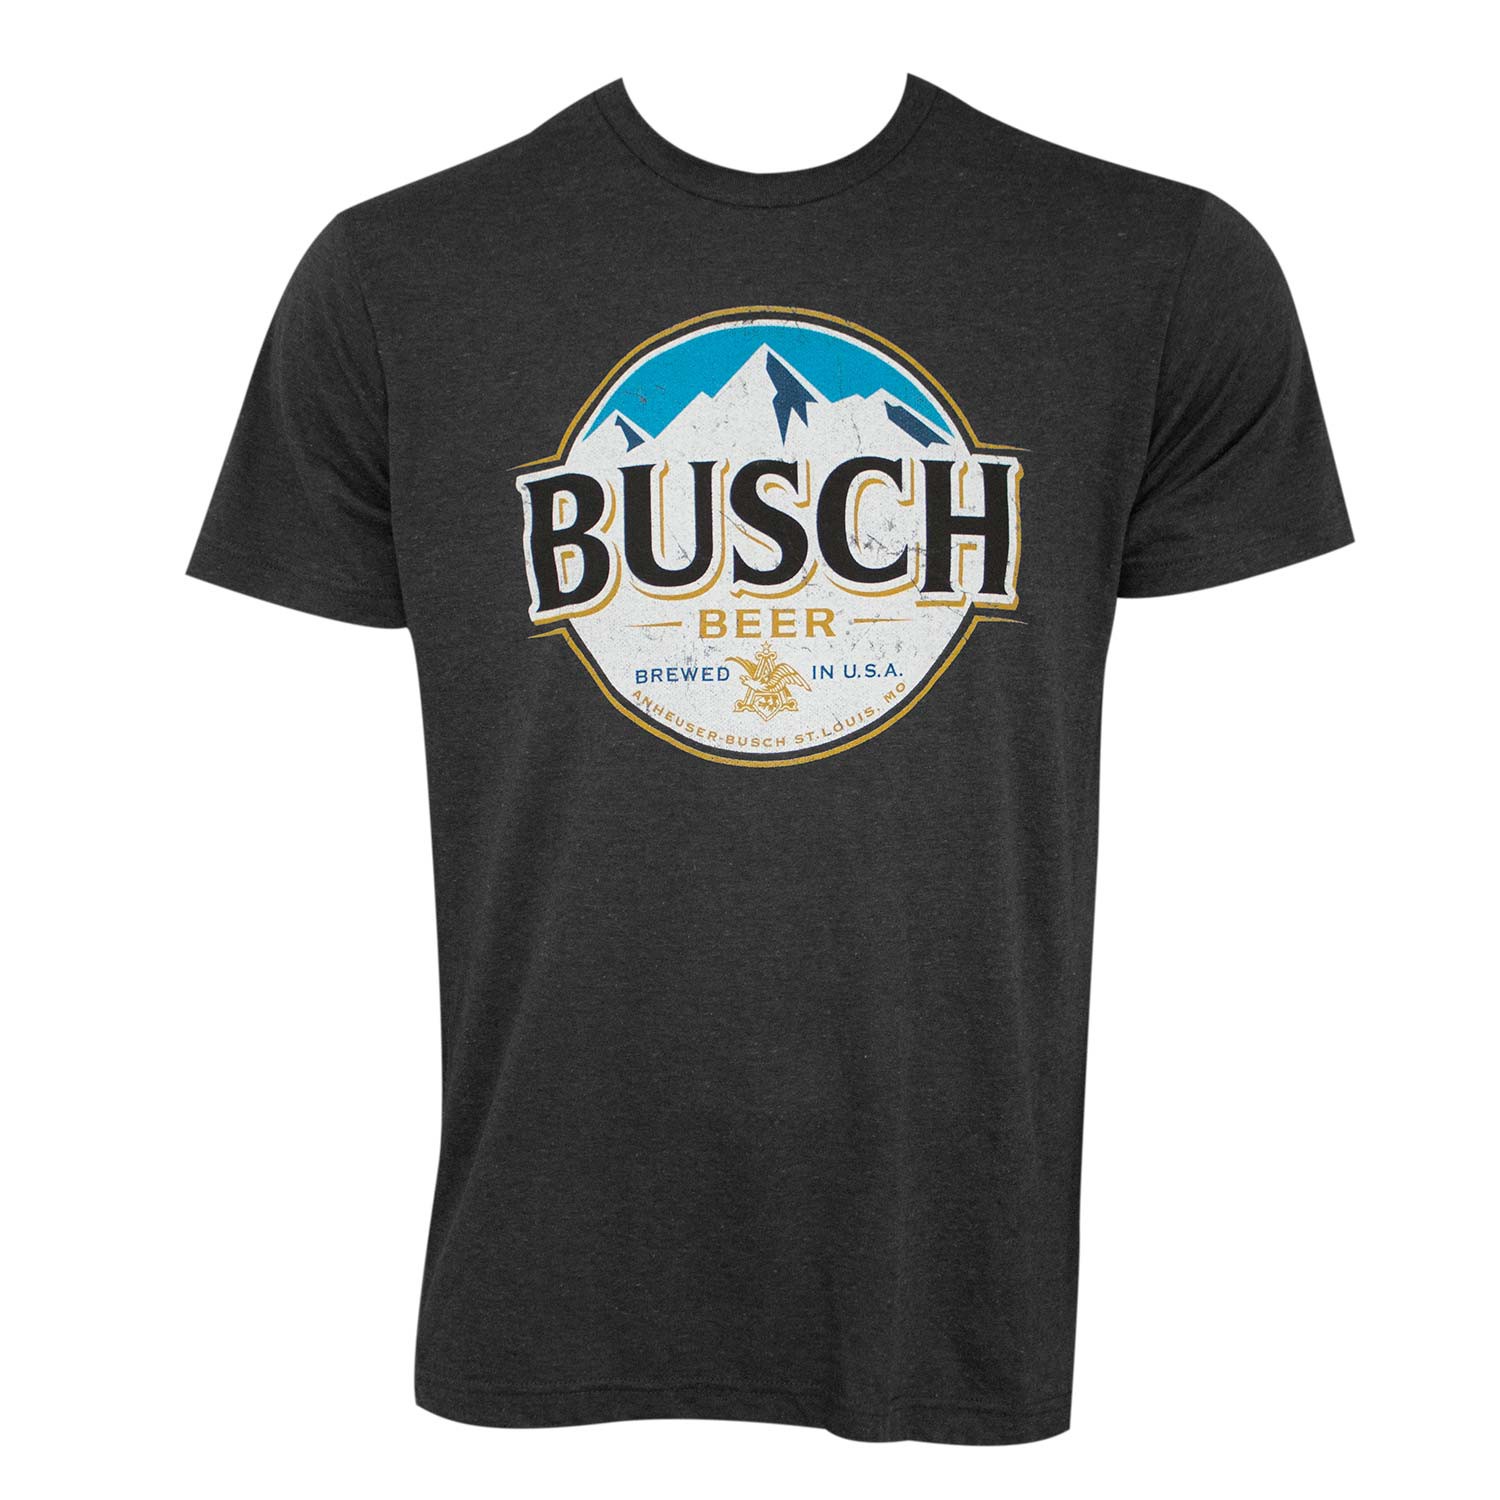 Busch Heather Black Round Logo Tee Shirt